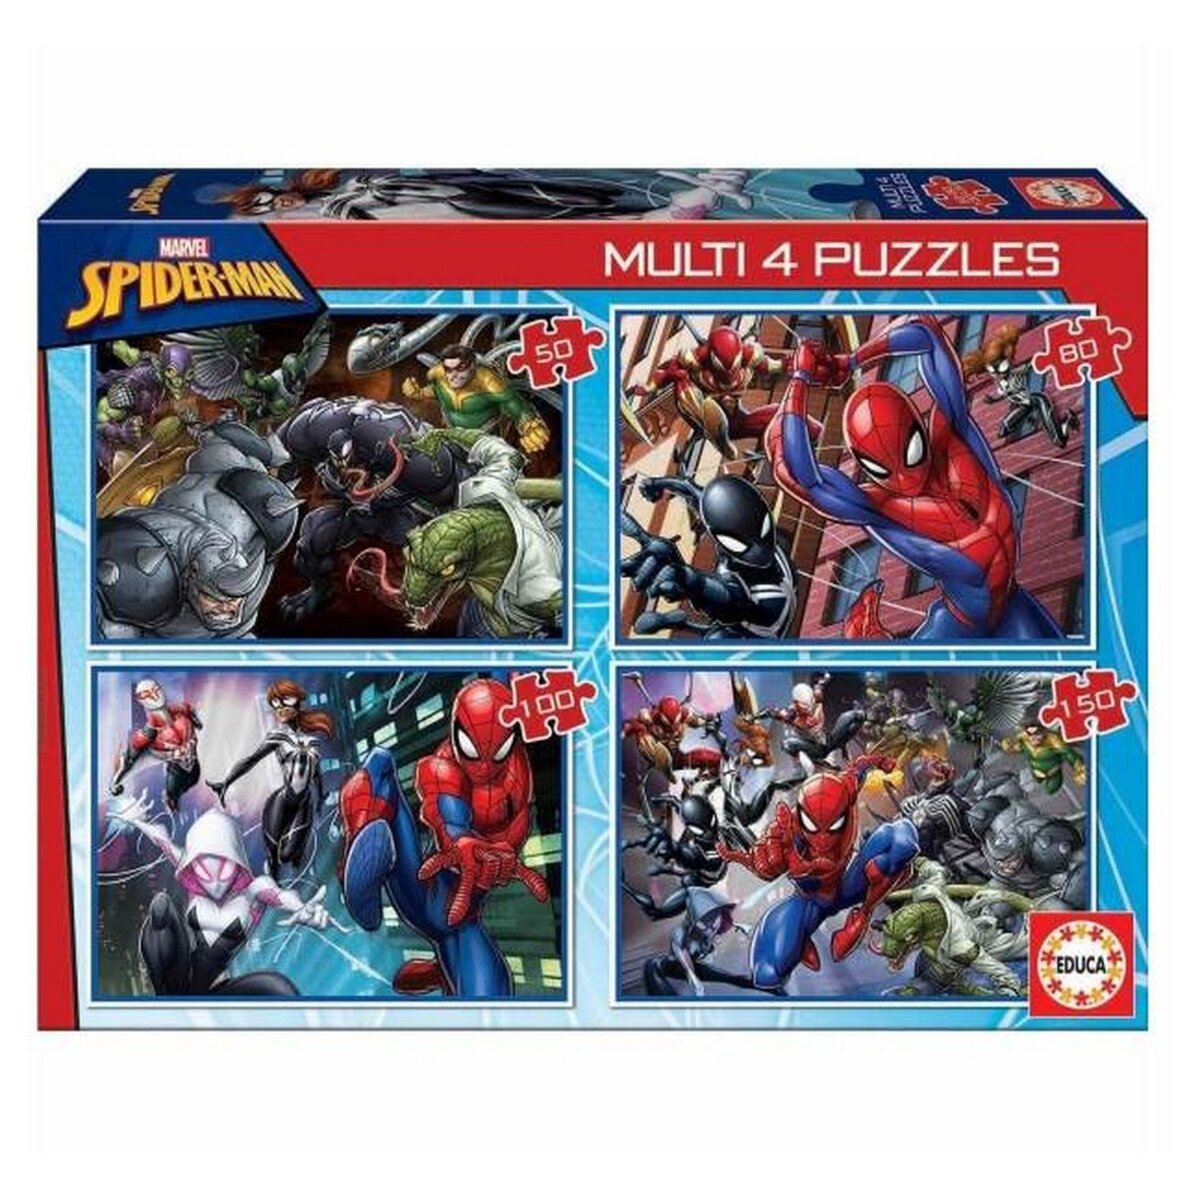 EDUCA Multi 4 Puzzles Spider-Man